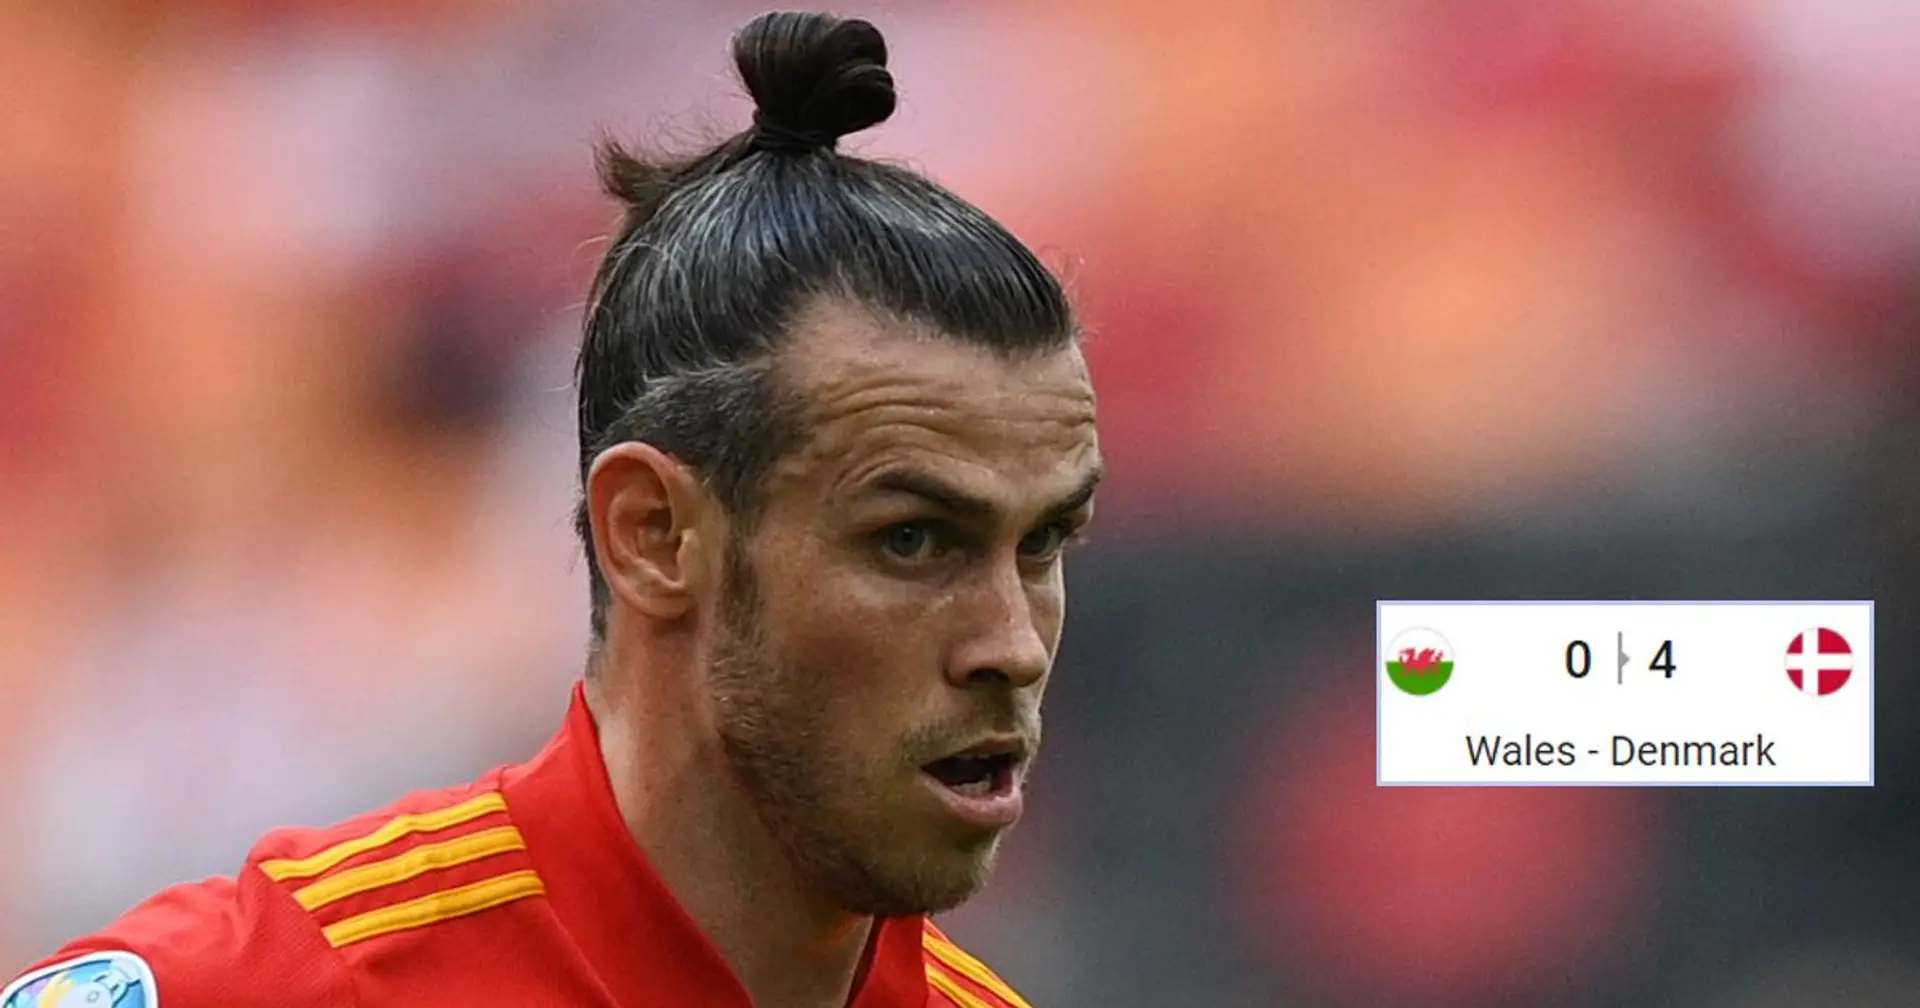 Bale devient le premier joueur madrilène à être éliminé de l'Euro 2020 alors que le Danemark a donné une leçon au Pays de Galles